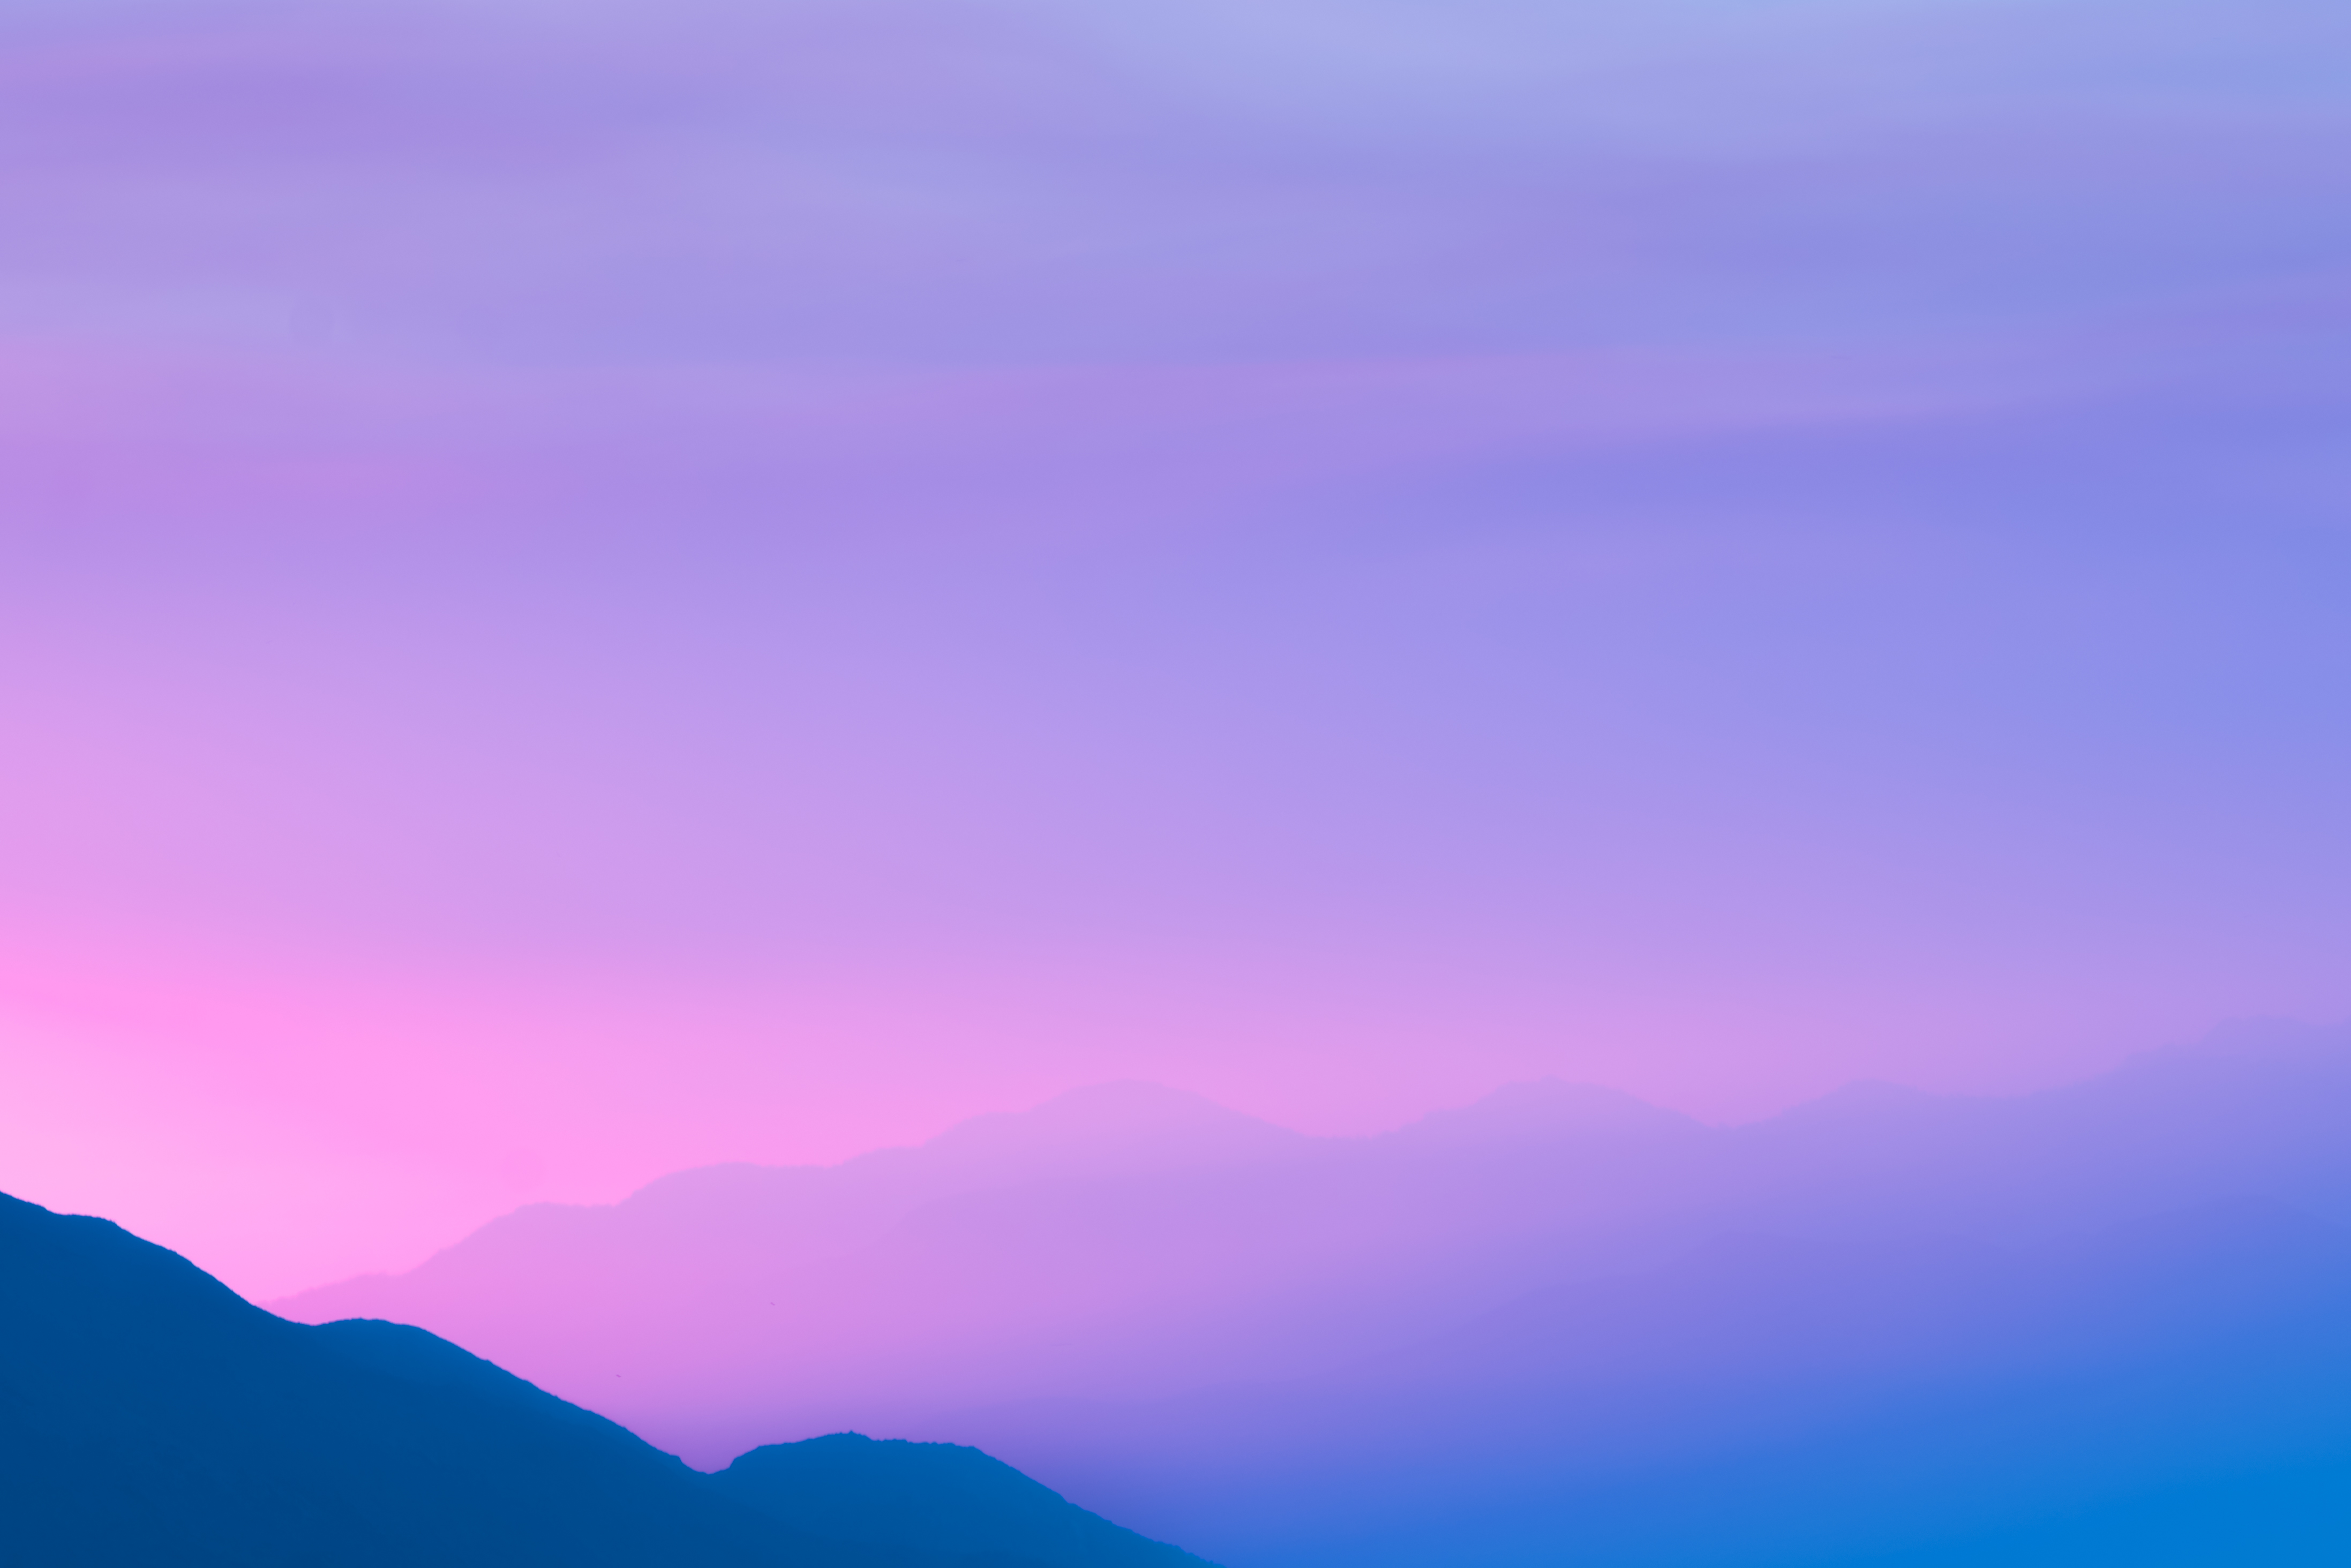 General 4389x2928 nature landscape mountains sky purple blue violet